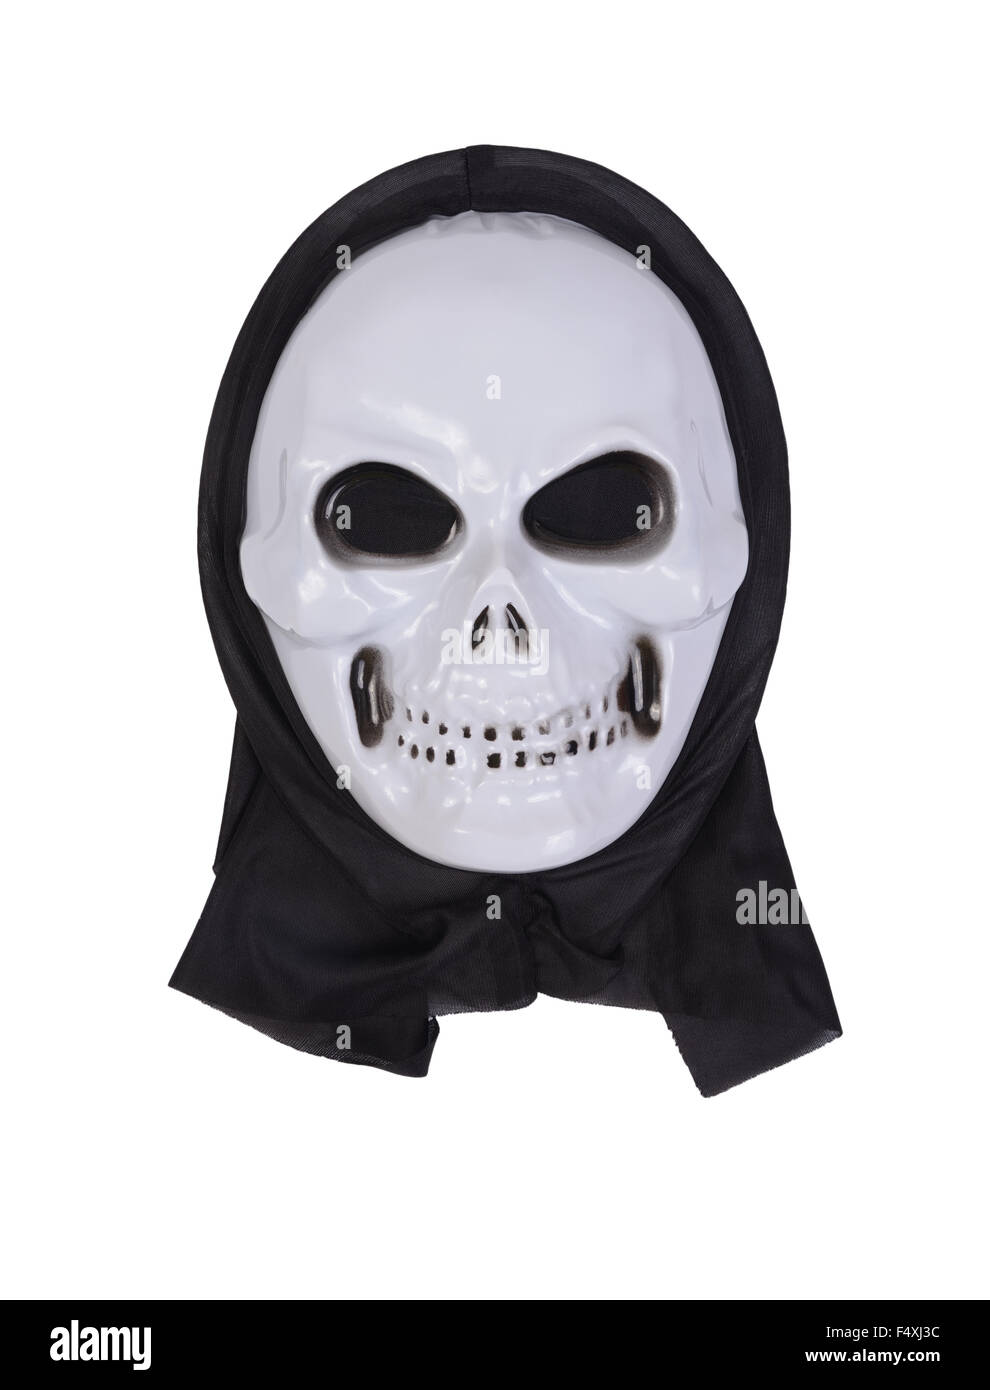 Skull mask for halloween on white background. Stock Photo